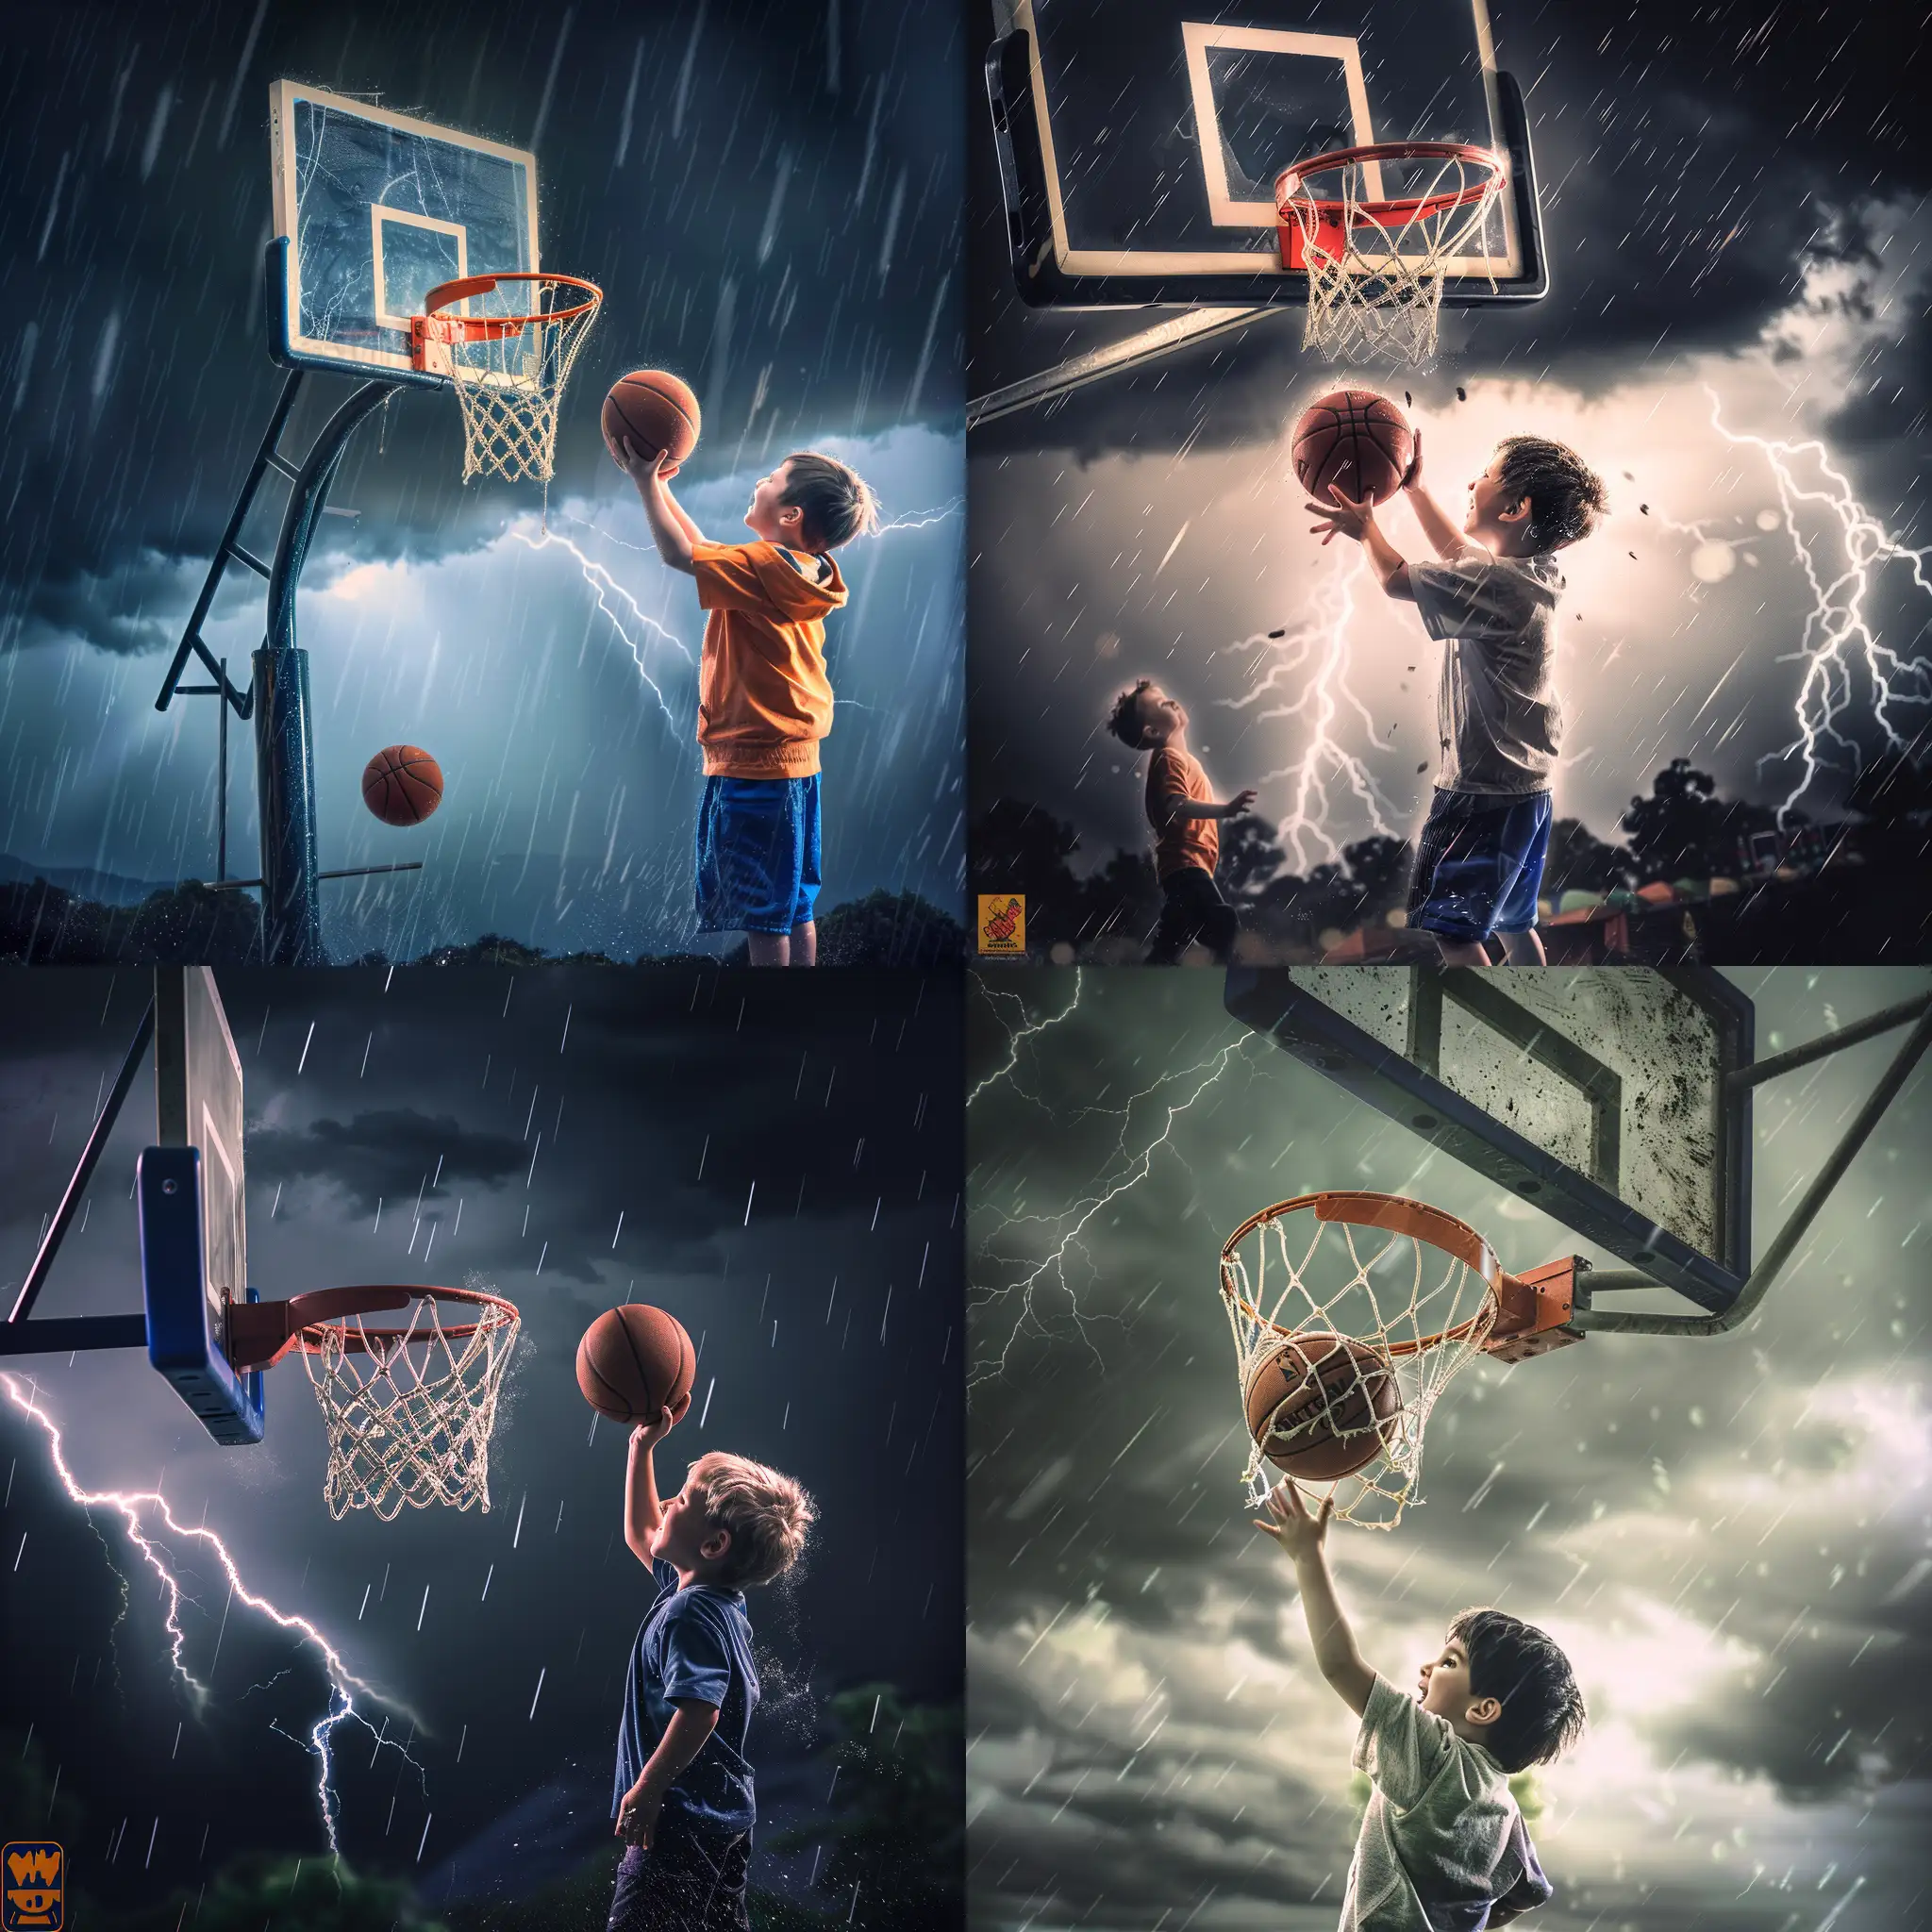 一个小男孩再电闪雷鸣的暴雨天对着篮筐投篮，他很享受这个过程，笑容很治愈